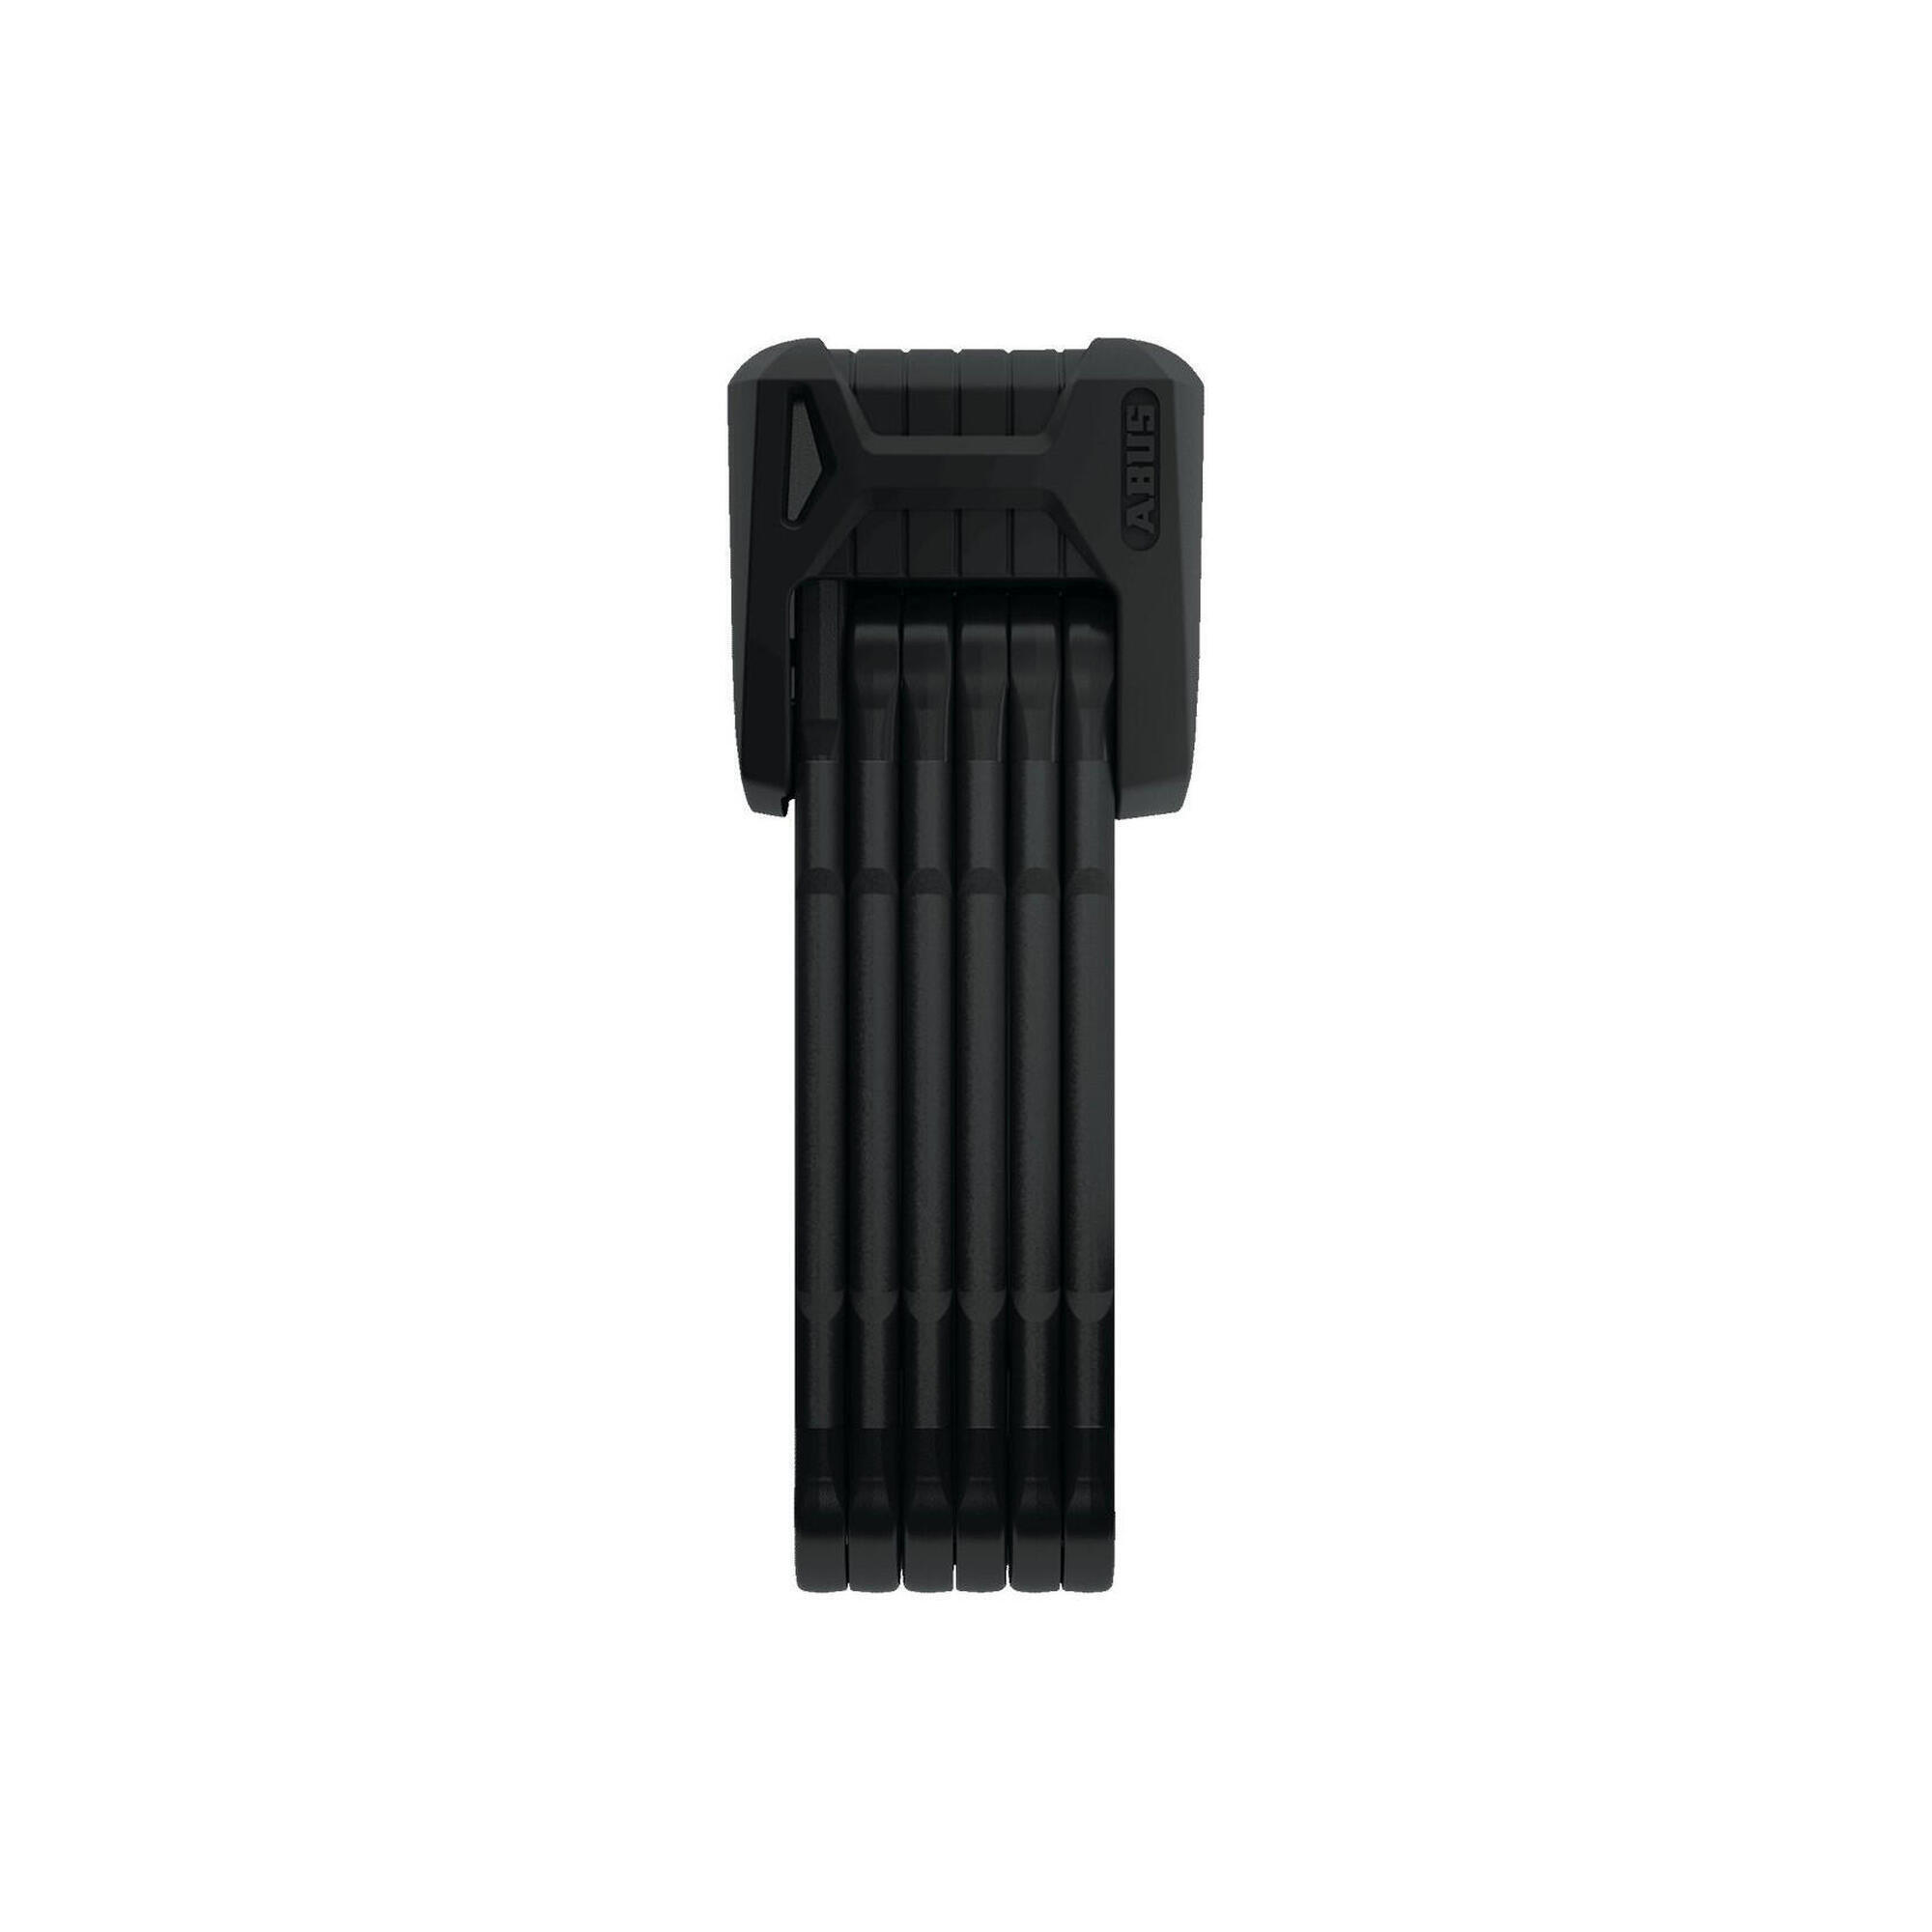 Бордовый гранит XPlus 6500 / 110 мм - черный SH ABUS, черный / черный / черный